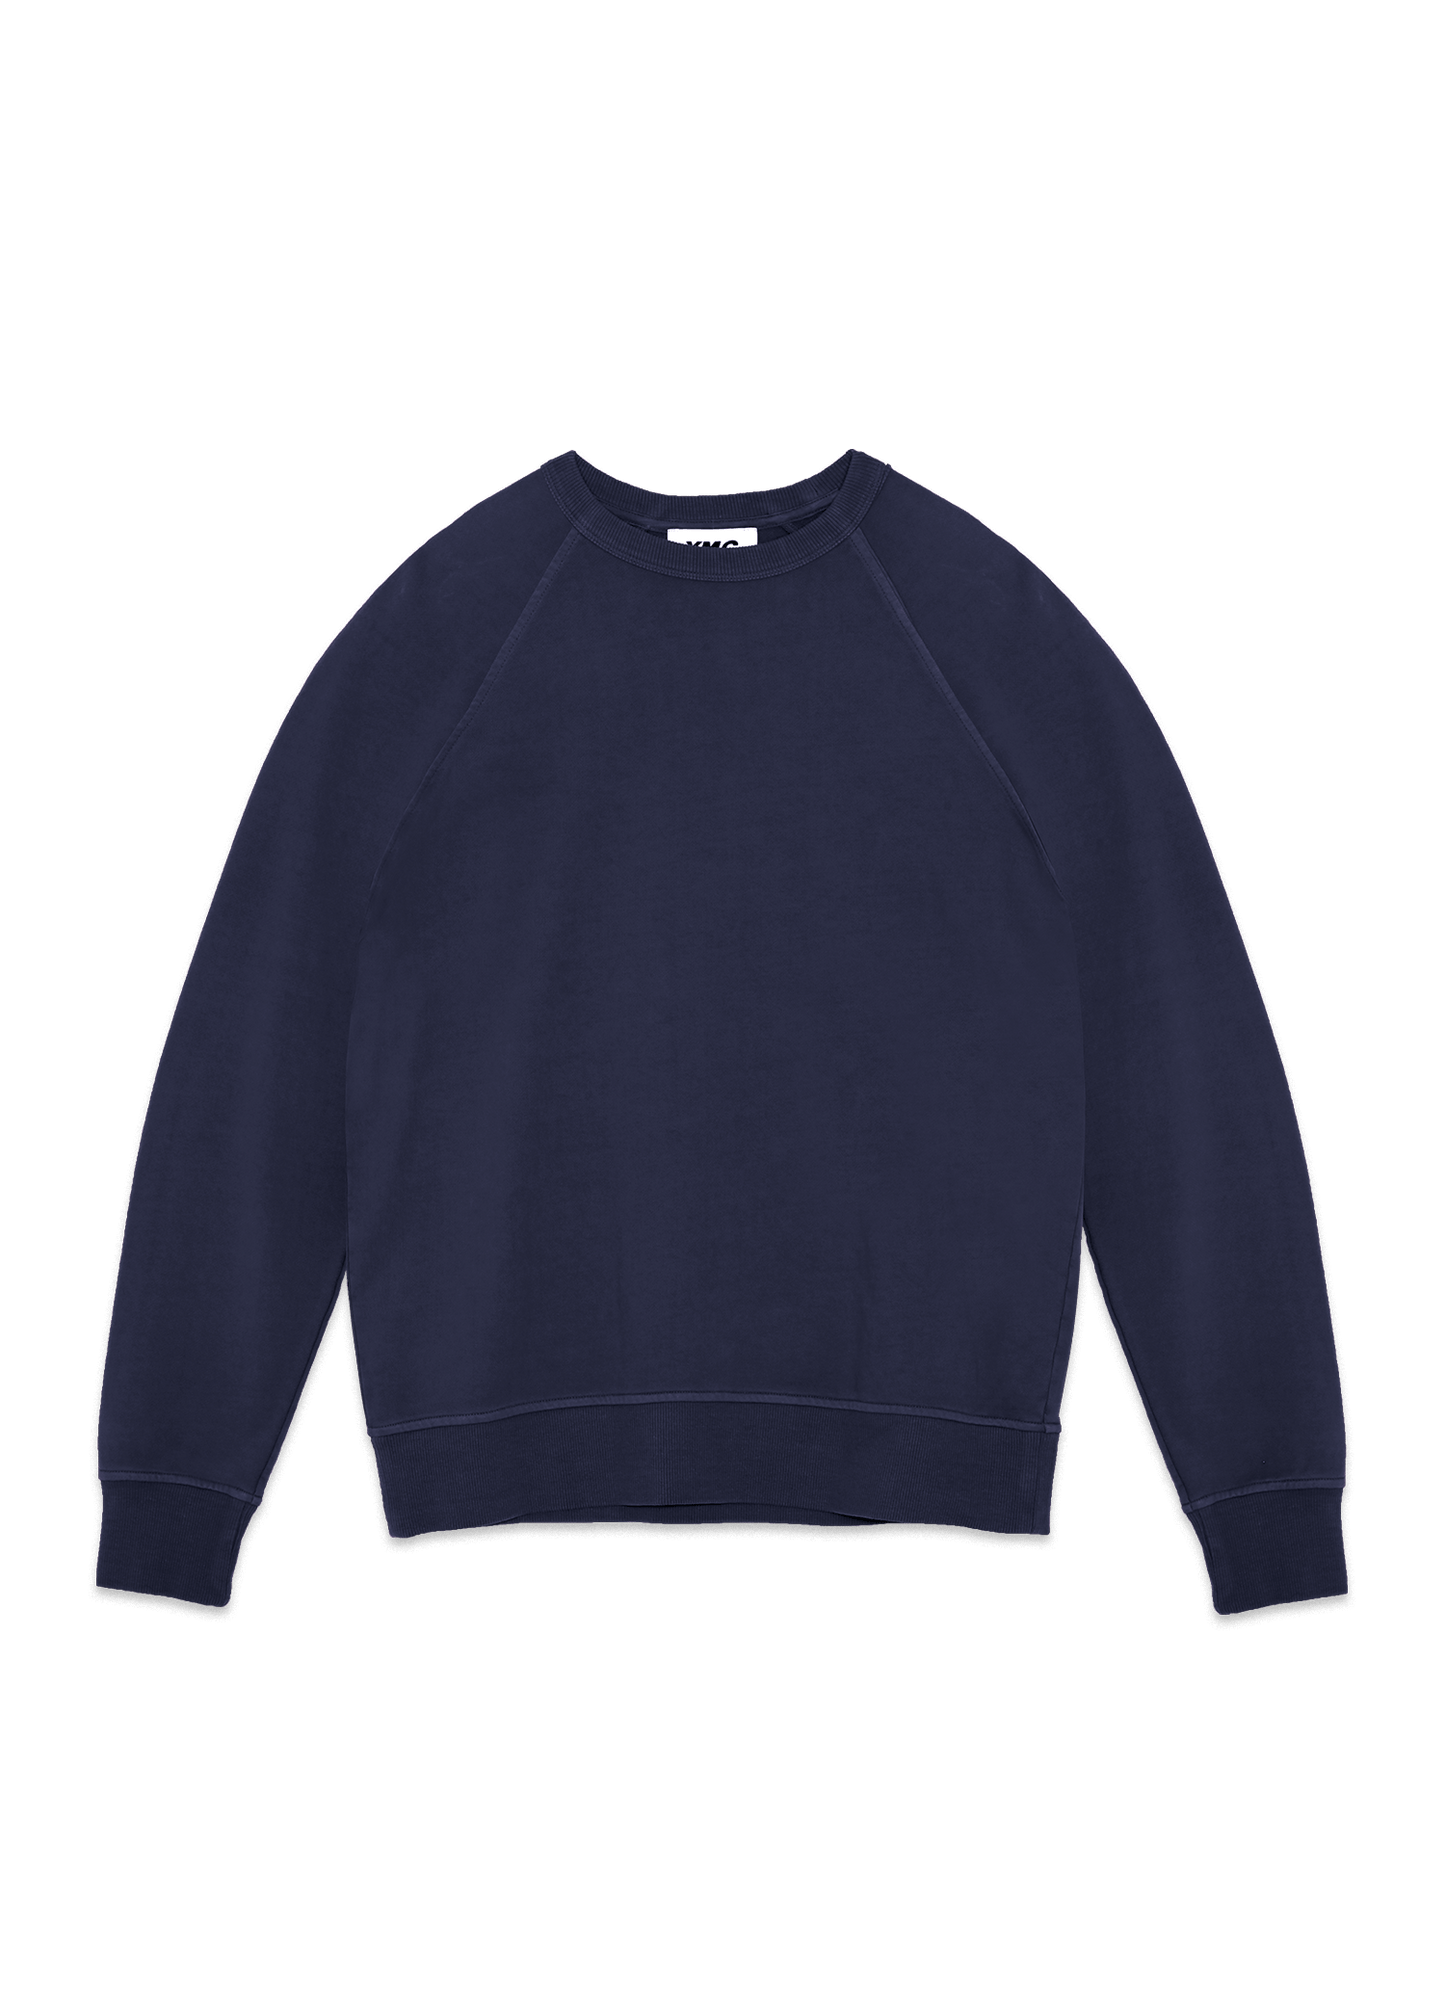 
                  
                    Schrank Sweatshirt - Navy
                  
                